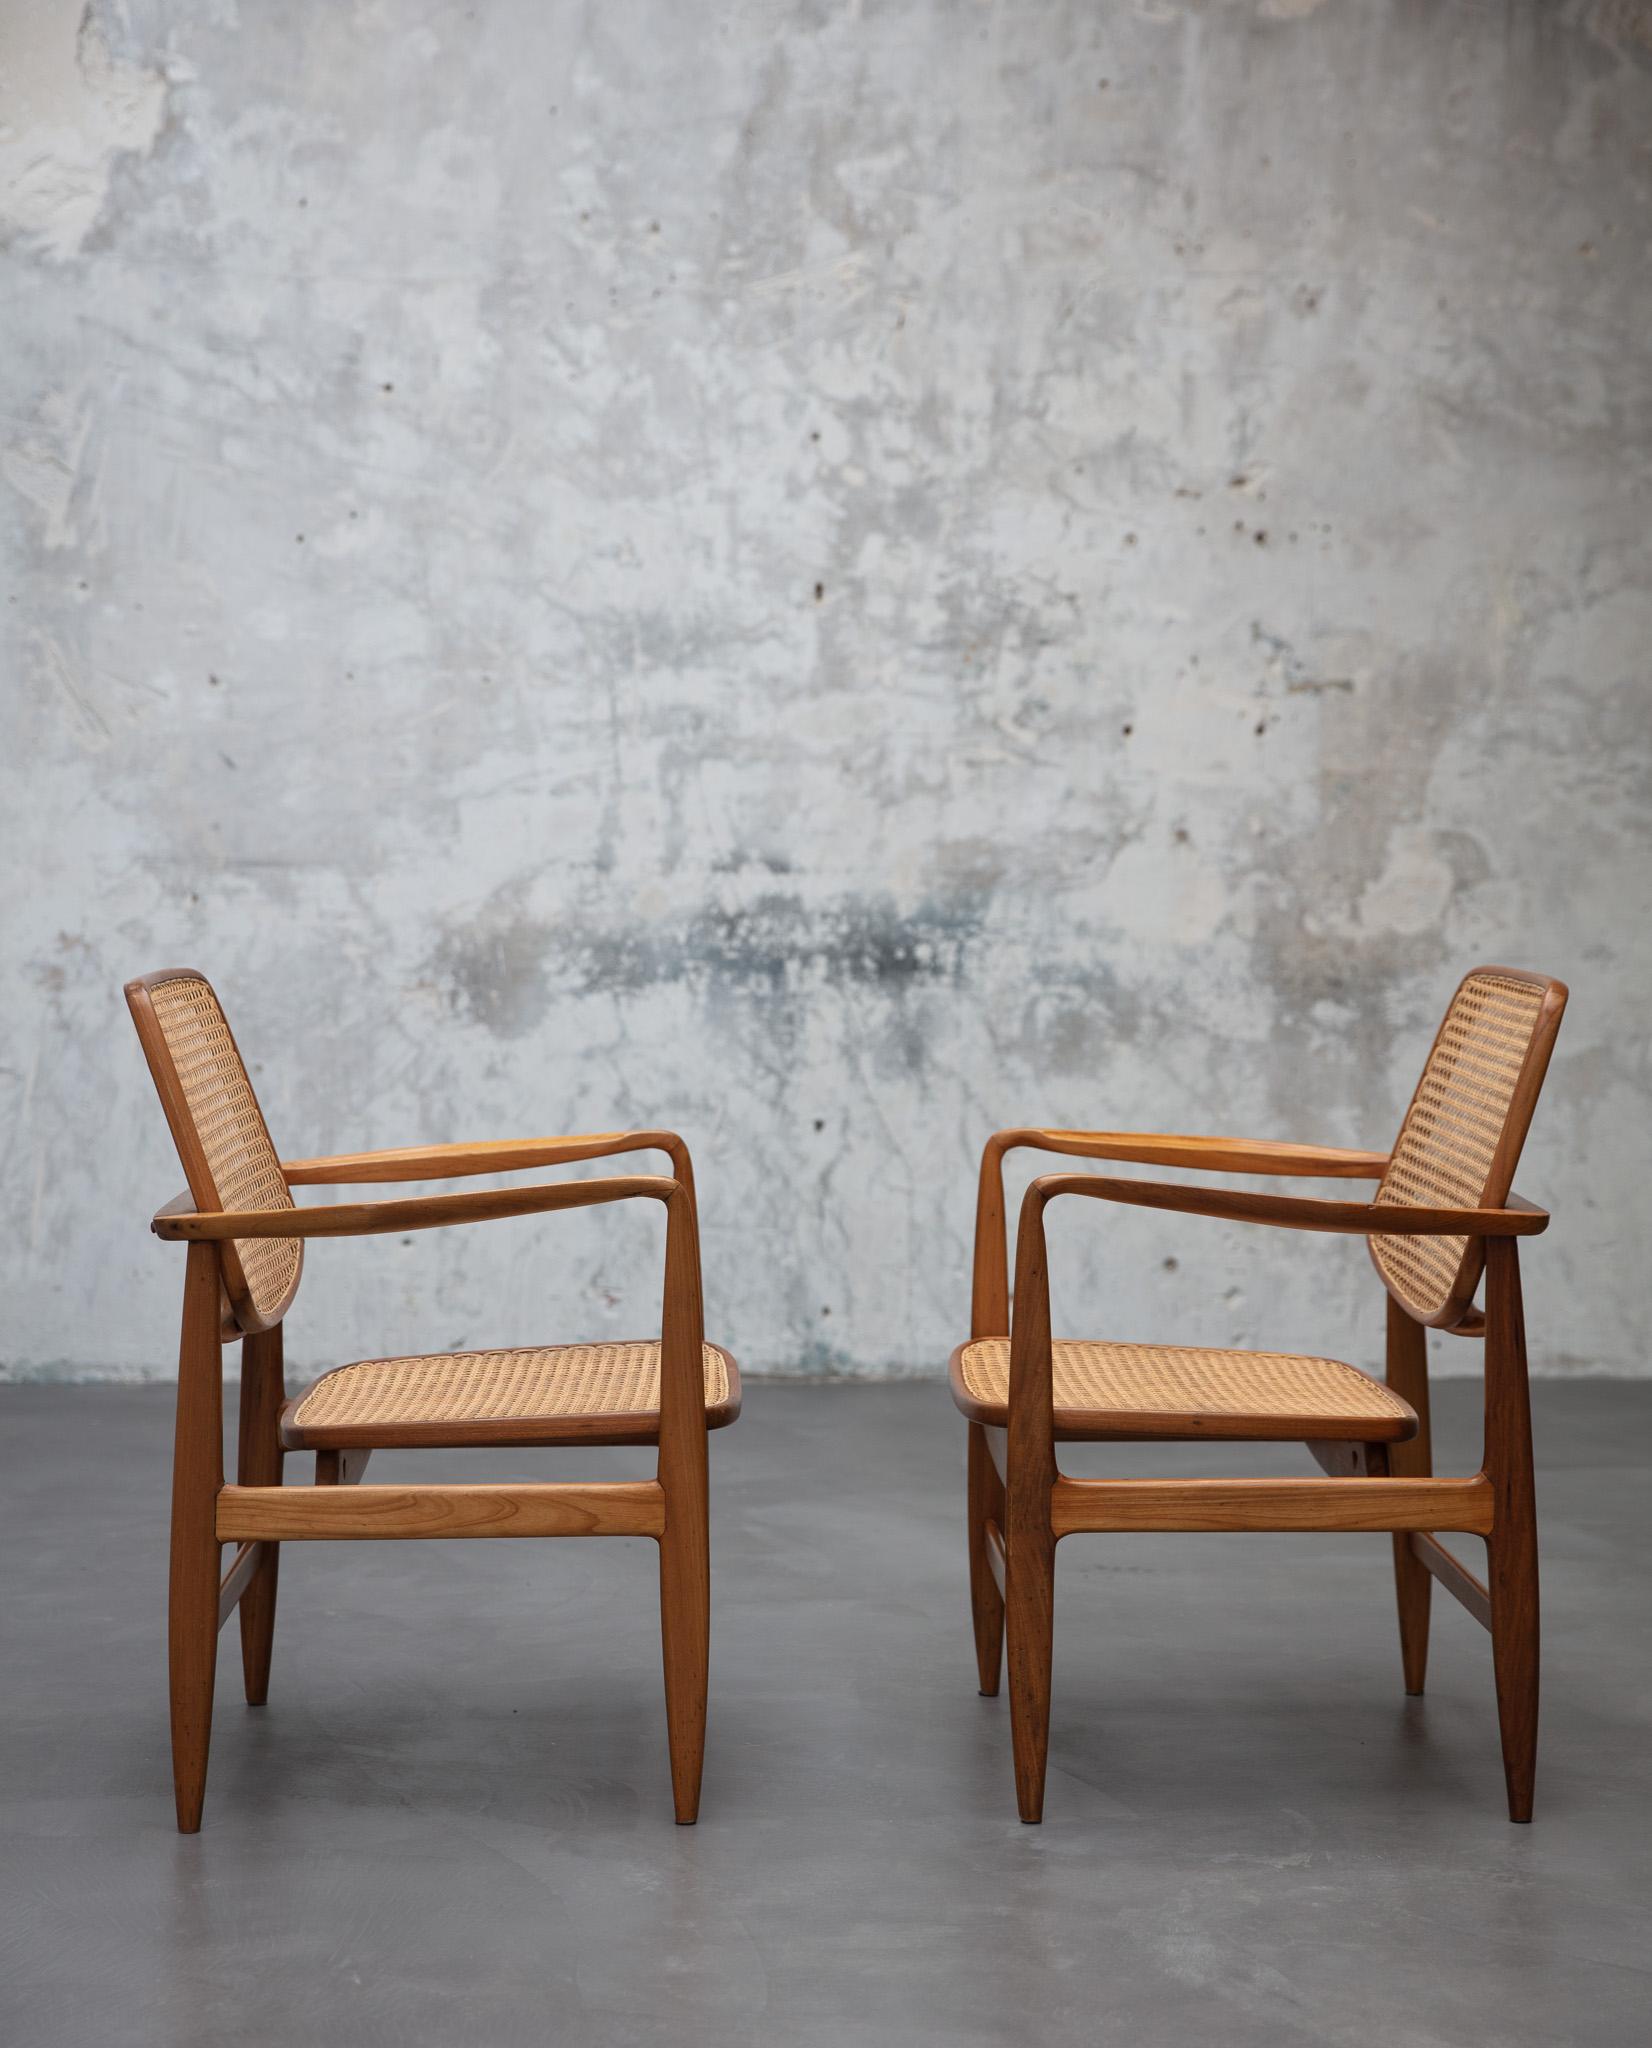 Le fauteuil Oscar, conçu par Sergio Rodrigues (1927-2014) en 1956, est un hommage à Oscar Niemeyer (1907-2012), une figure très influente dans le domaine de l'architecture moderne brésilienne. Ce fauteuil, qui reprend les principes de conception de